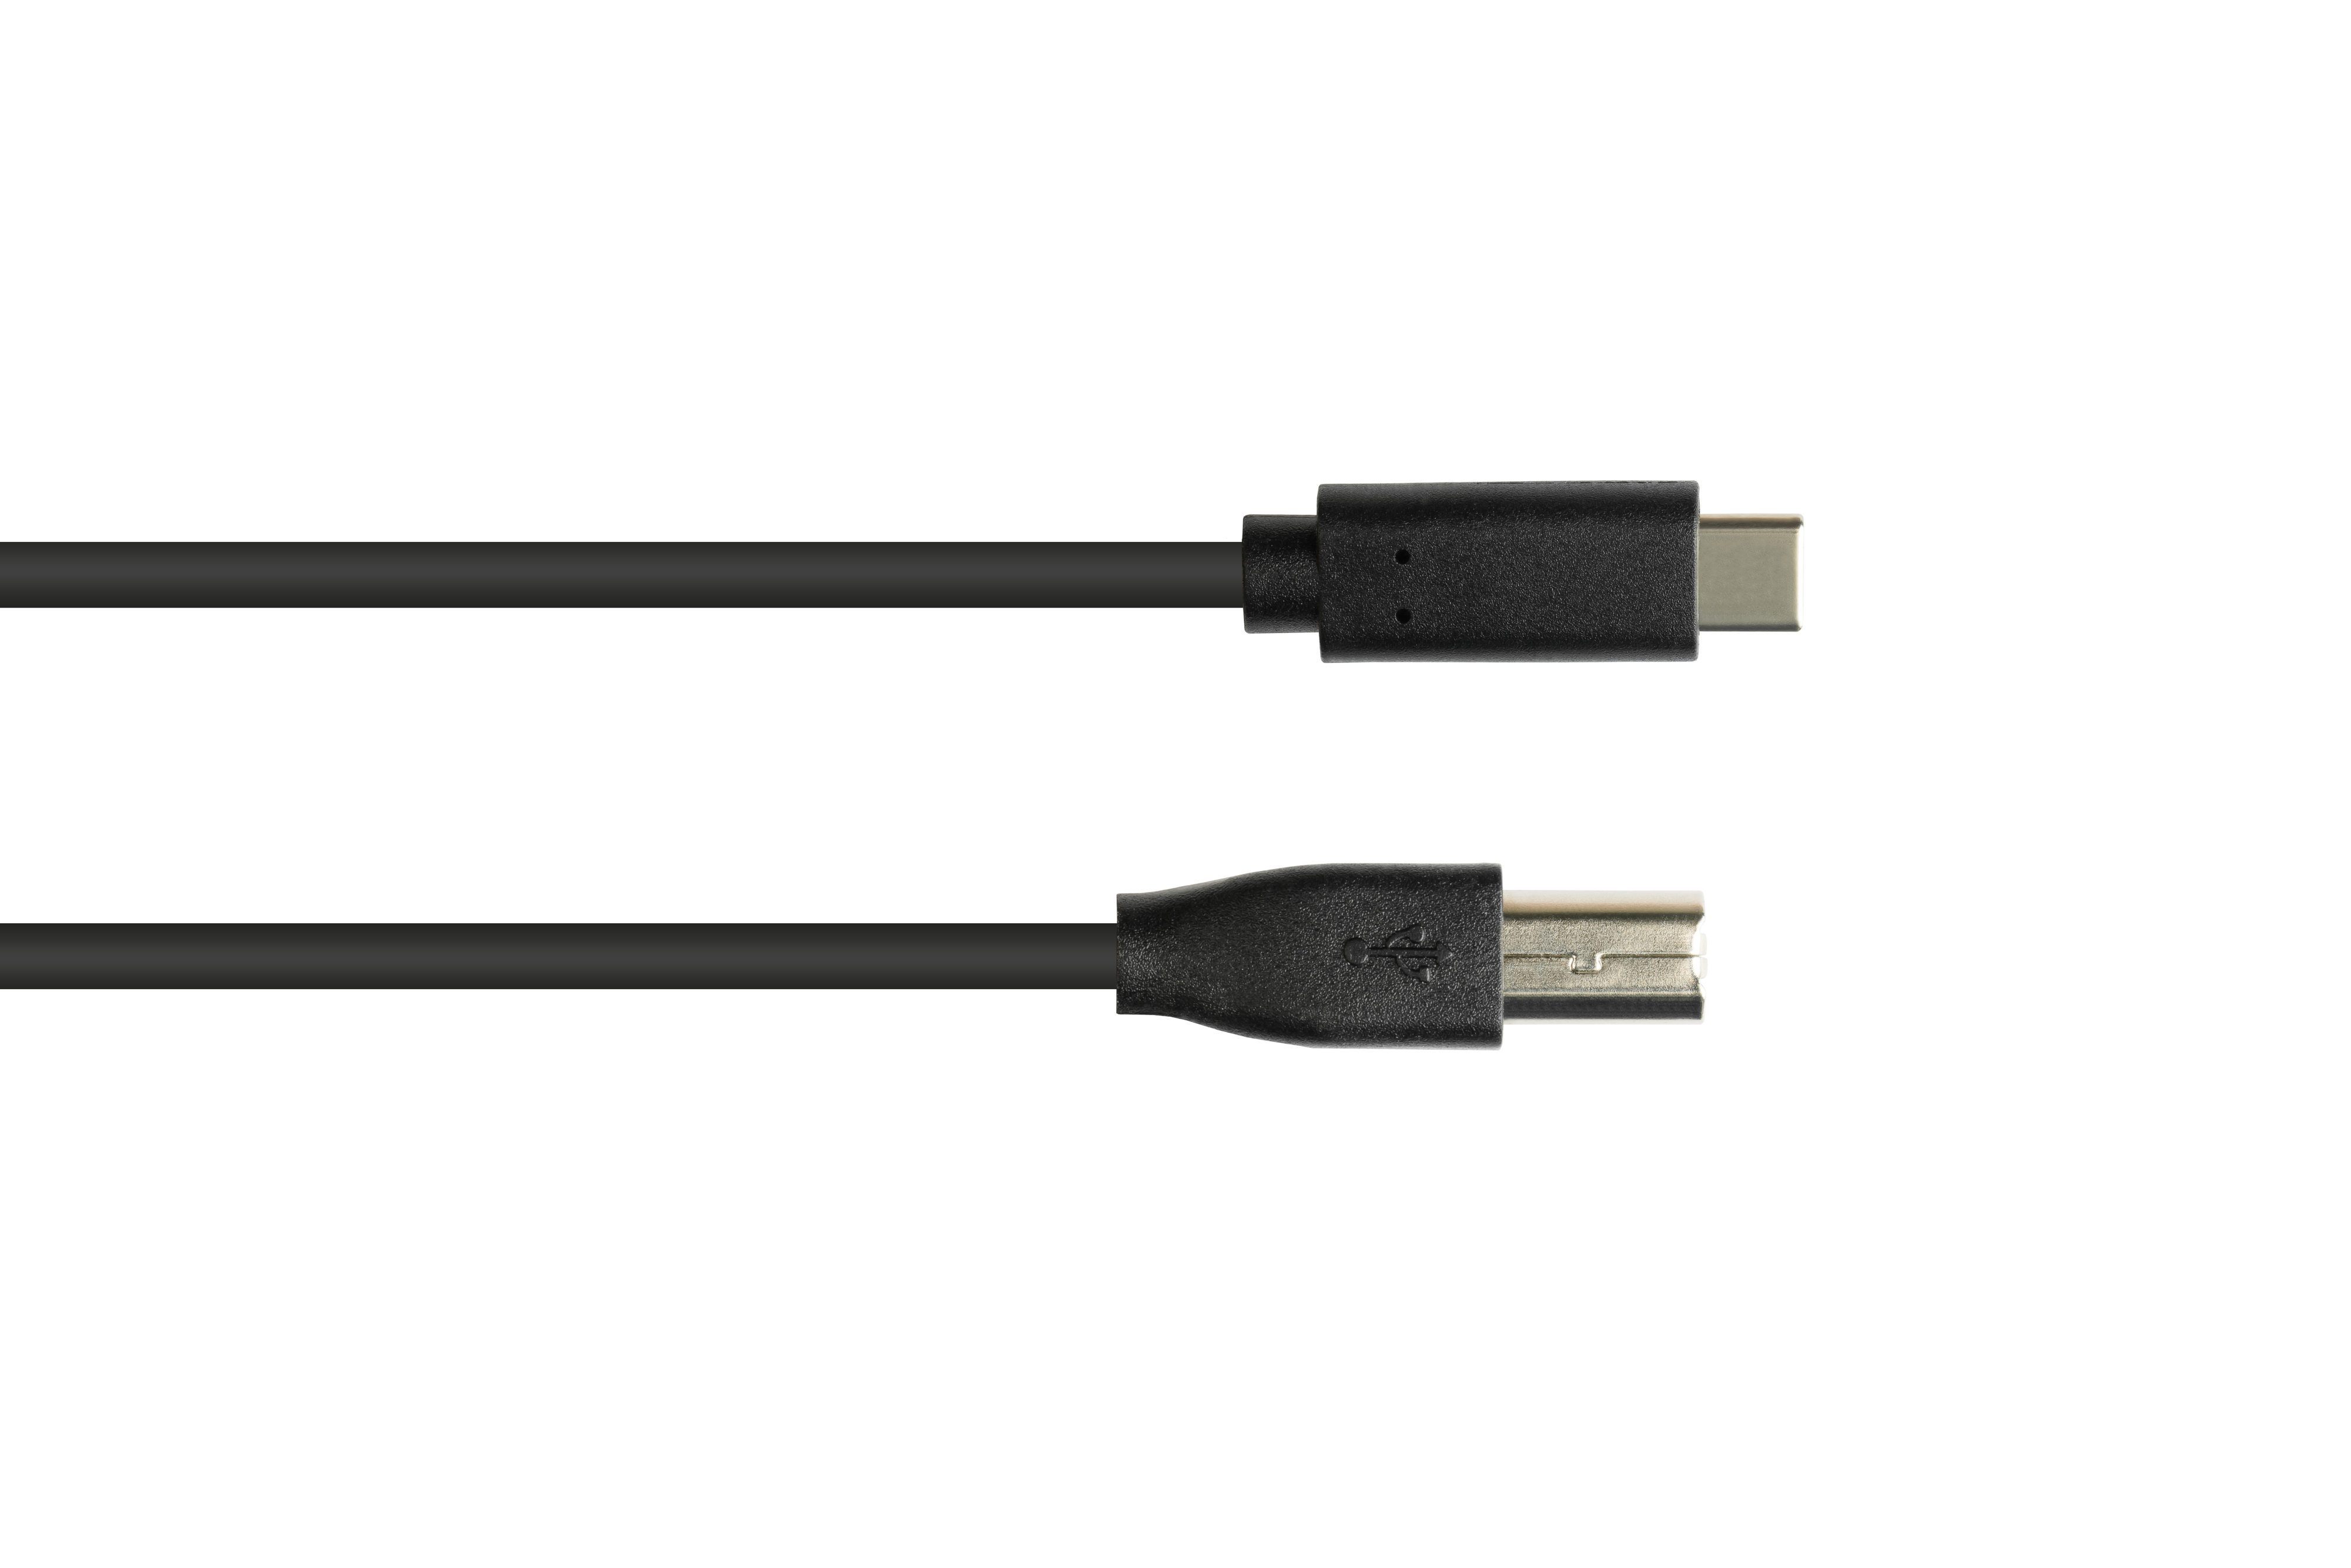 Stecker, schwarz GOOD 2.0 USB-C™ B Stecker USB CU, Anschlusskabel 2.0, an CONNECTIONS USB